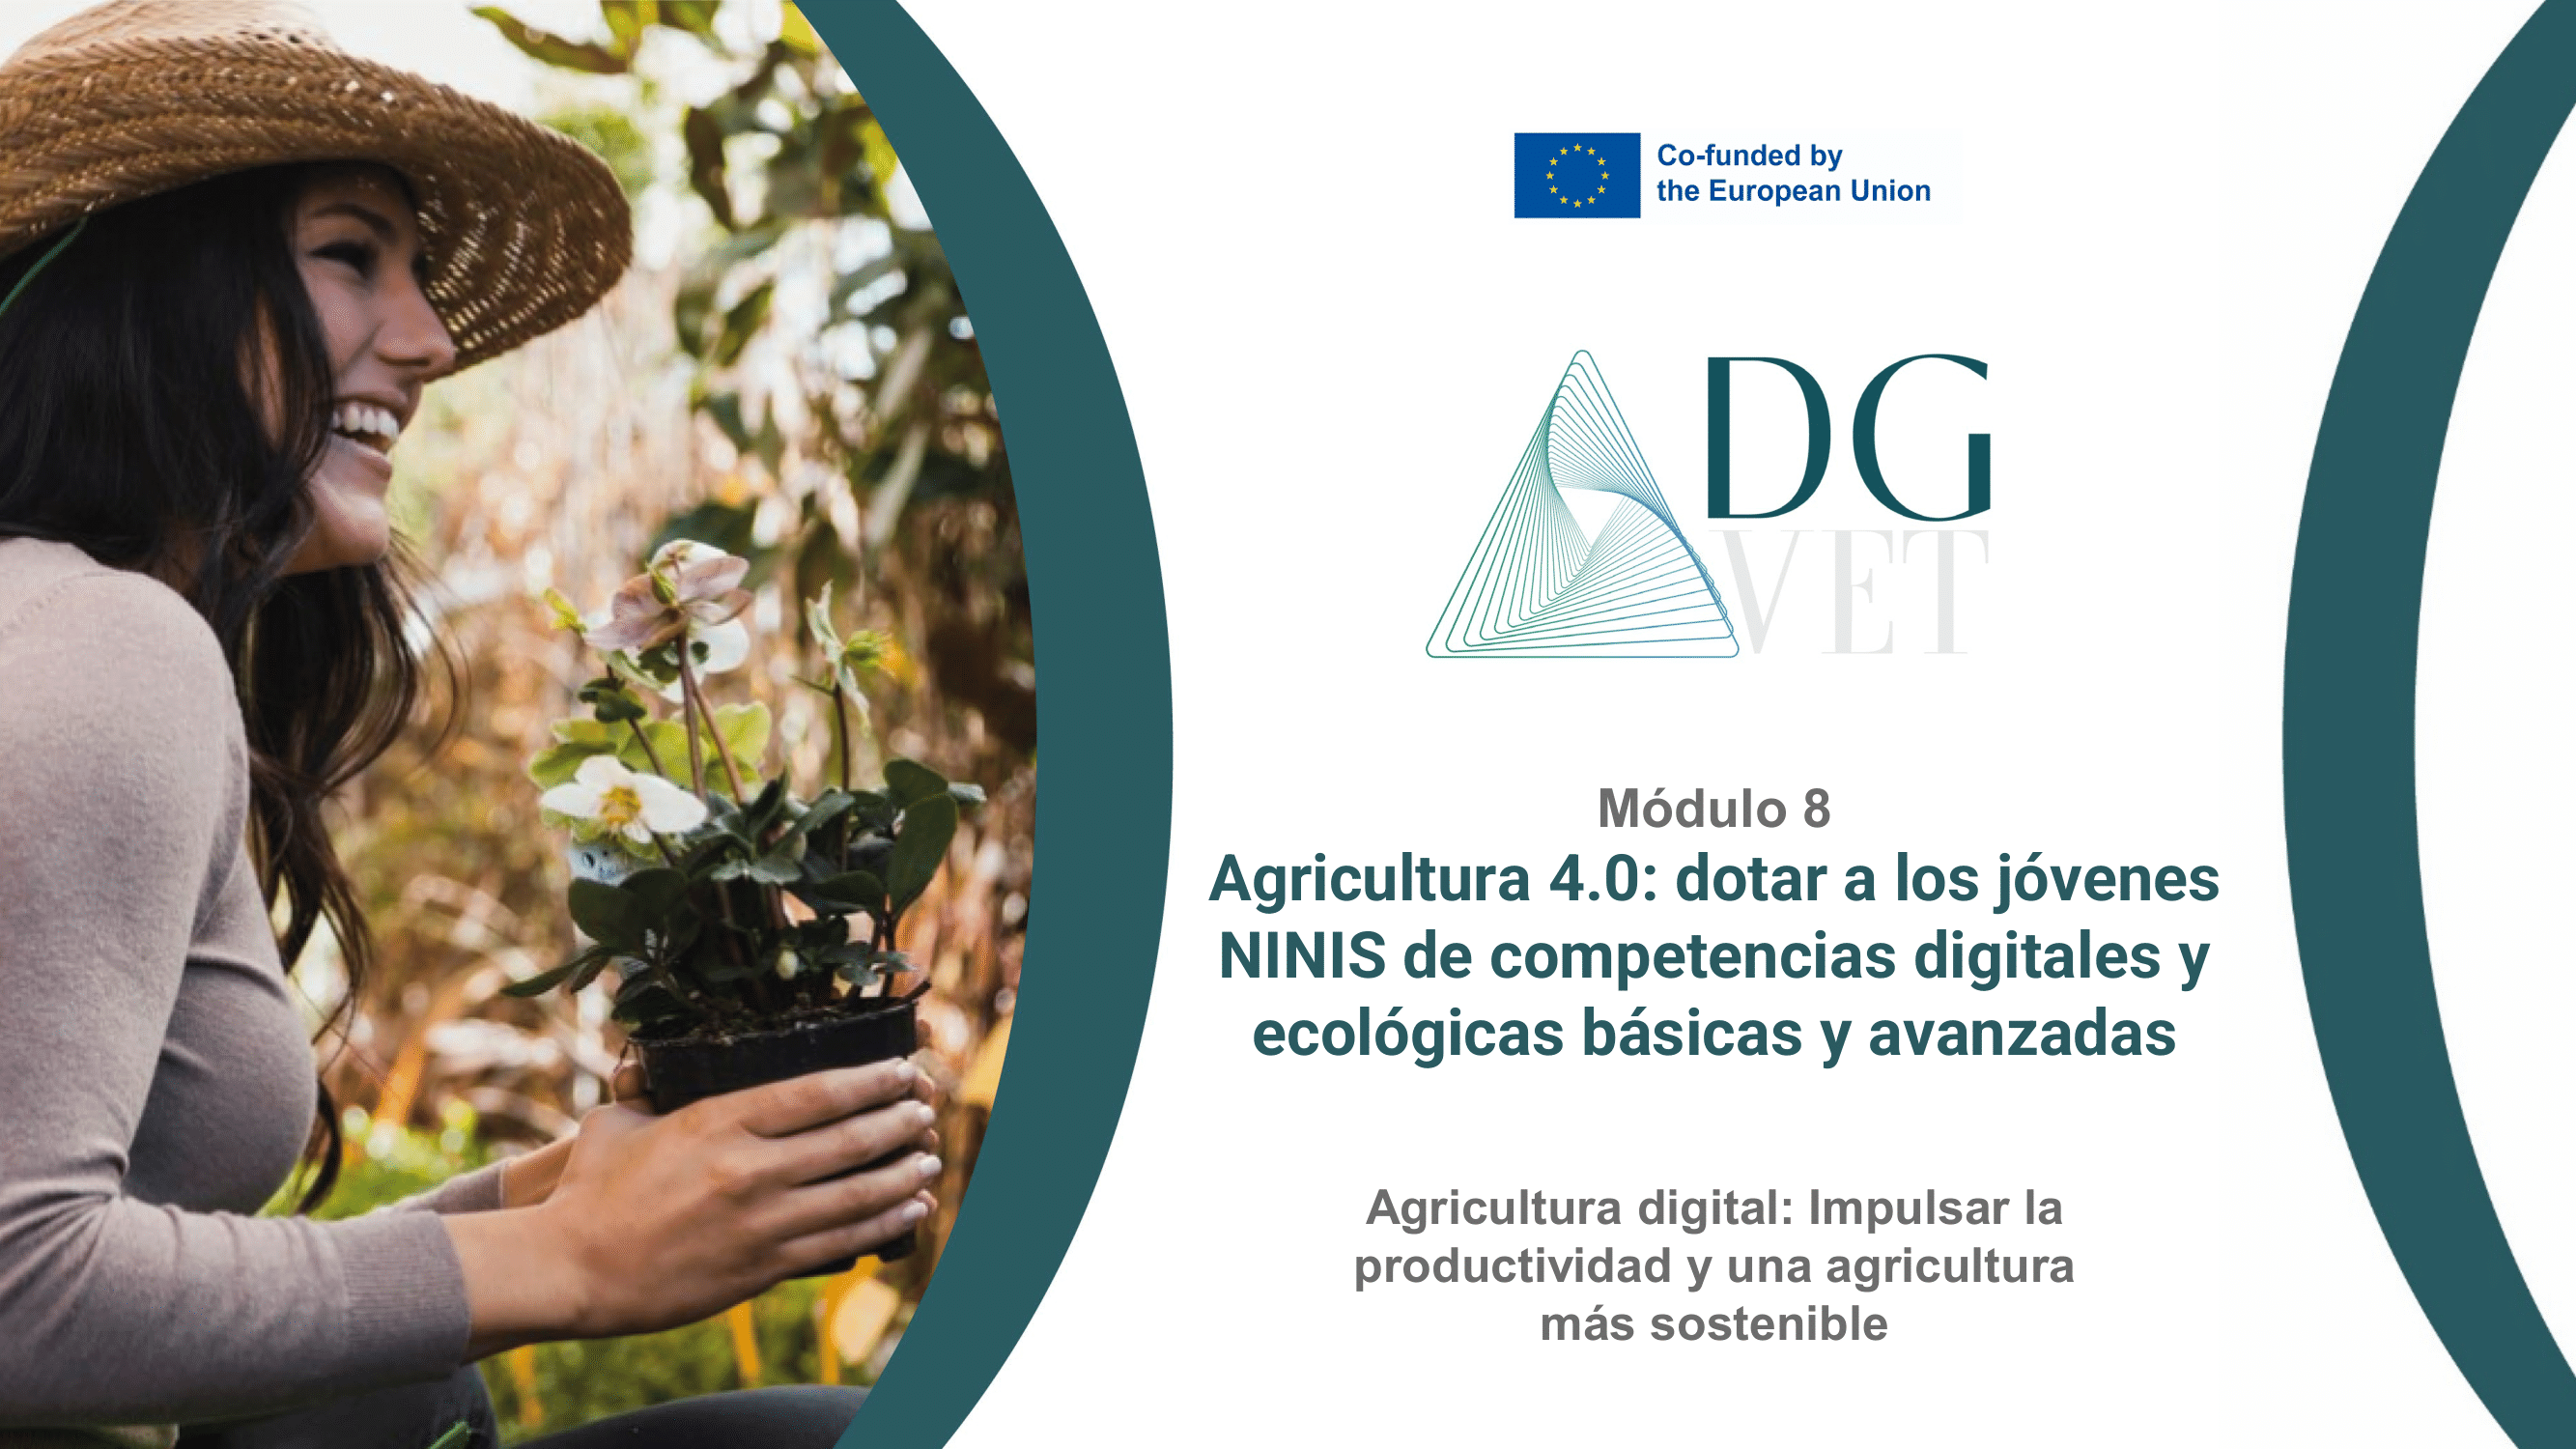 Módulo 8: “Agricultura digital: Impulsando la productividad y una forma de agricultura más sostenible”